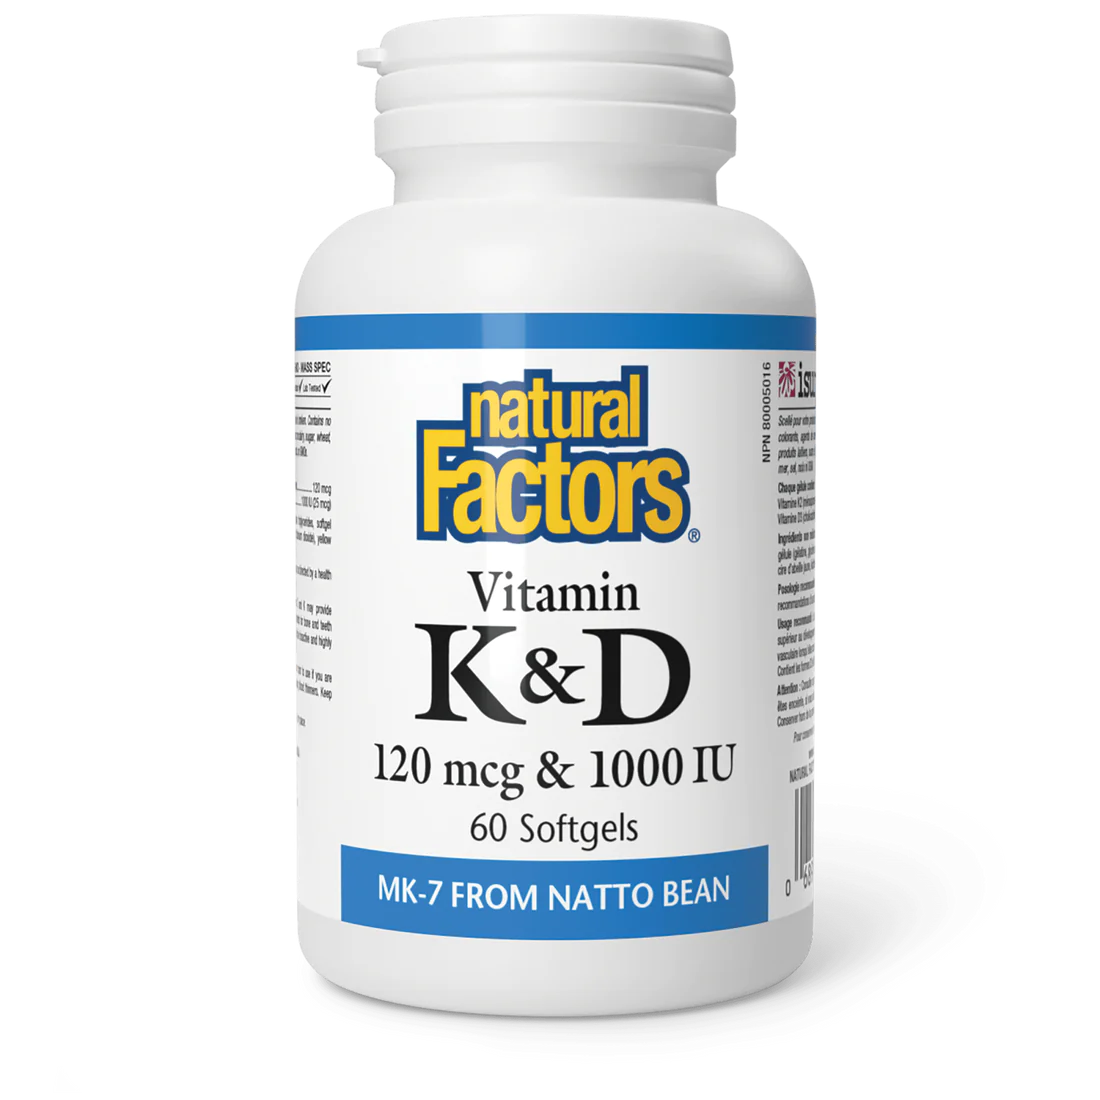 Vitamin K2 & D3